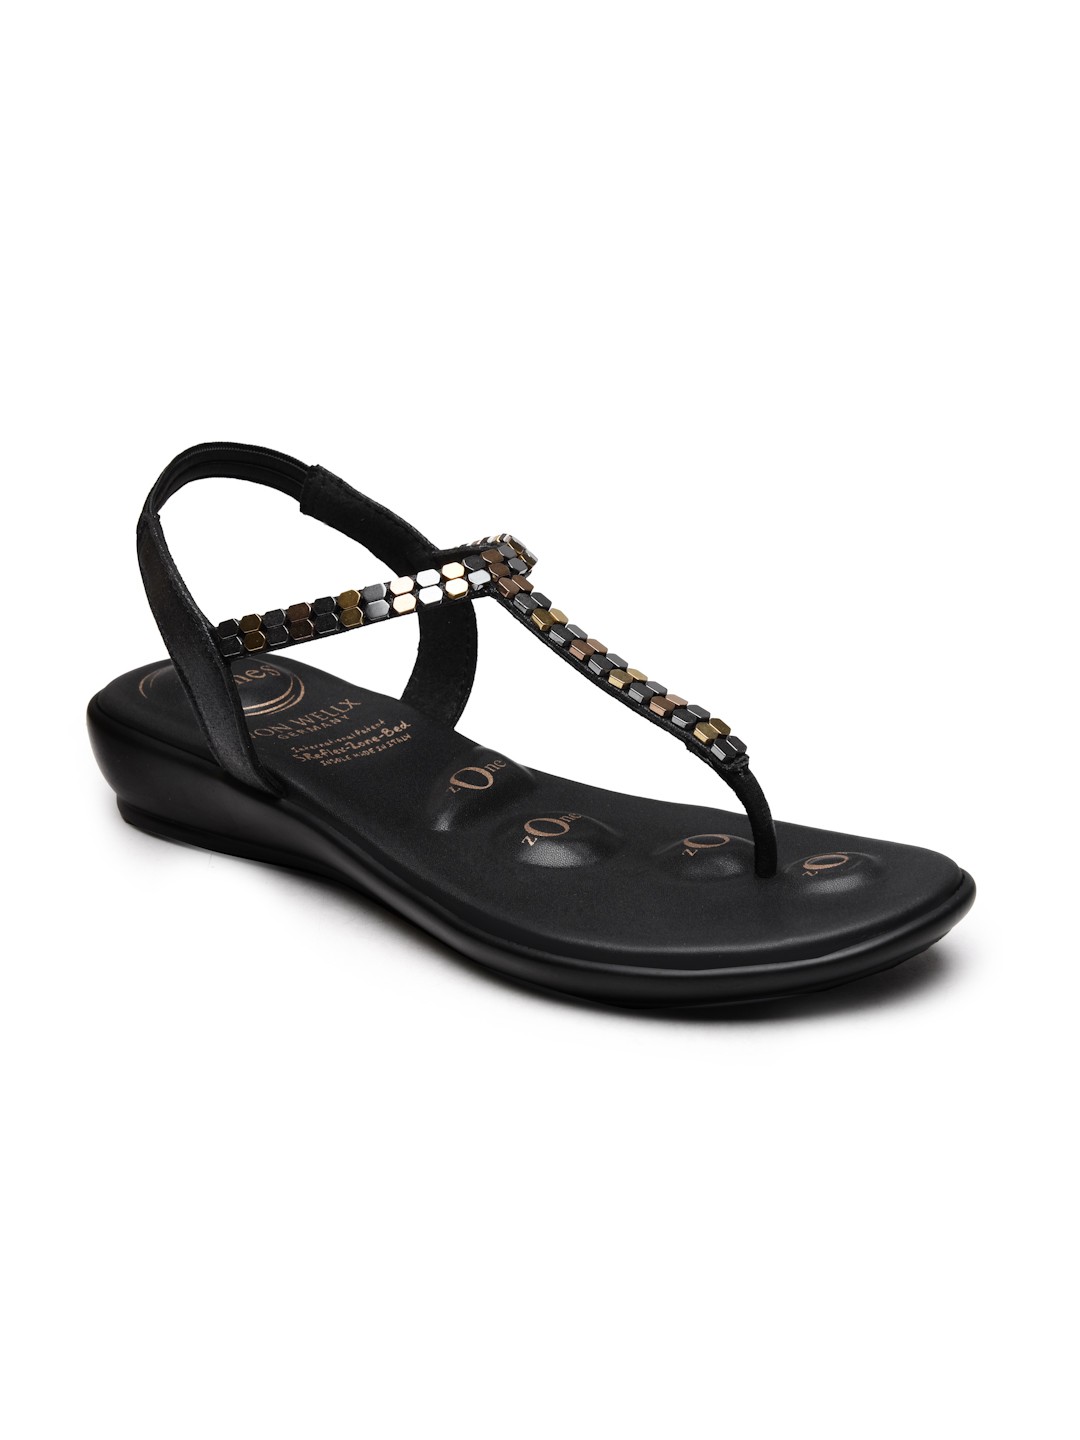 Buy VON WELLX GERMANY comfort women's black casual sandals REGINA In Delhi